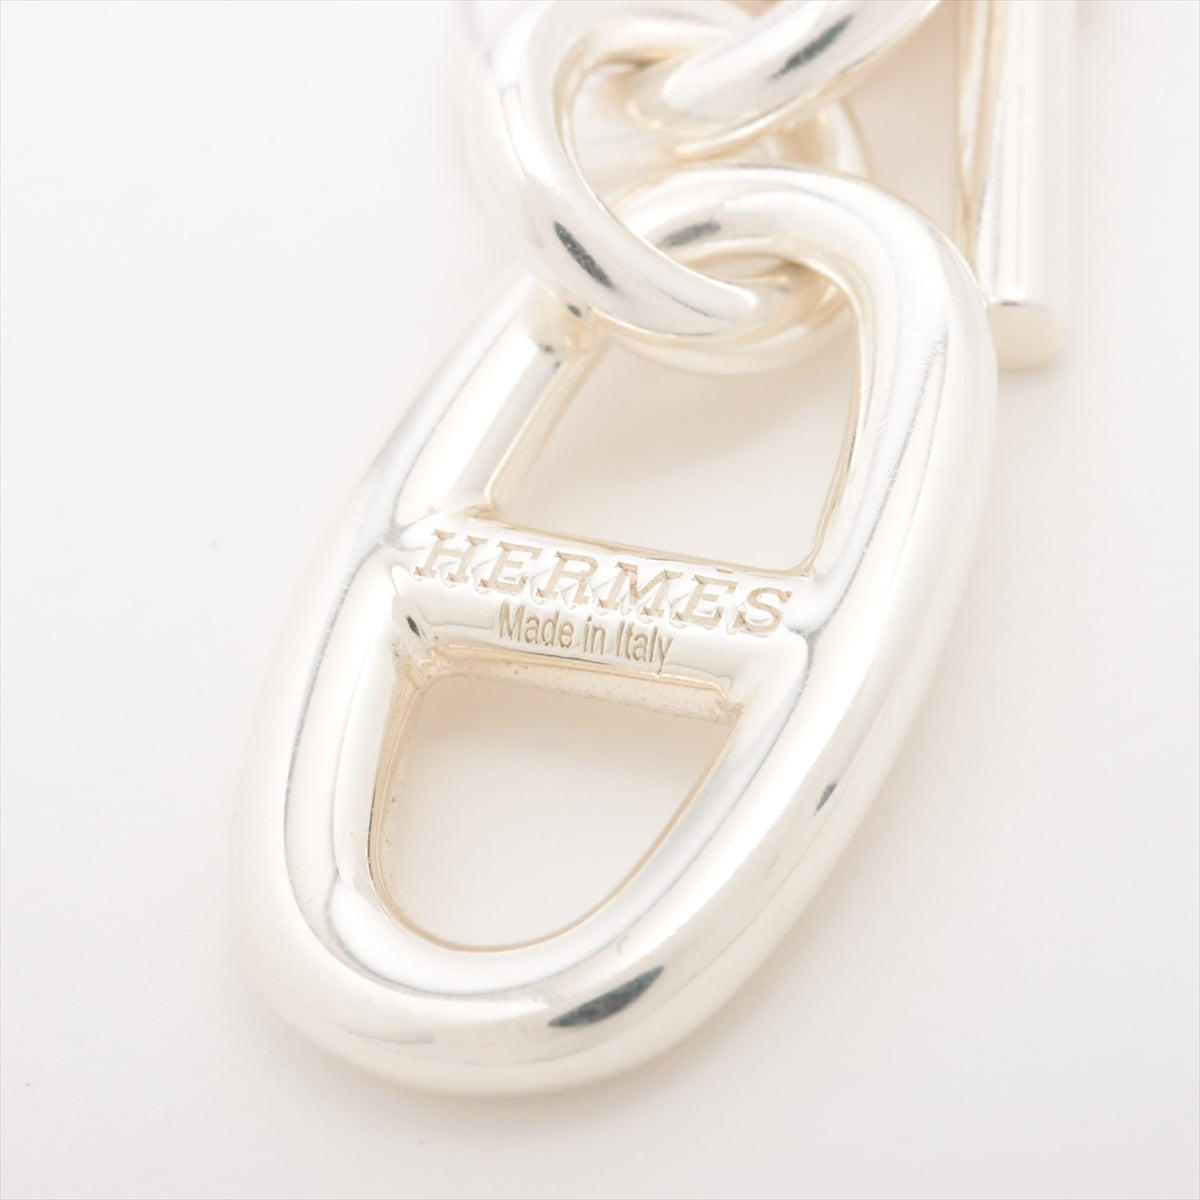 Hermès Chaîne d'Ancre Amulet Necklace 925 9.1g Silver